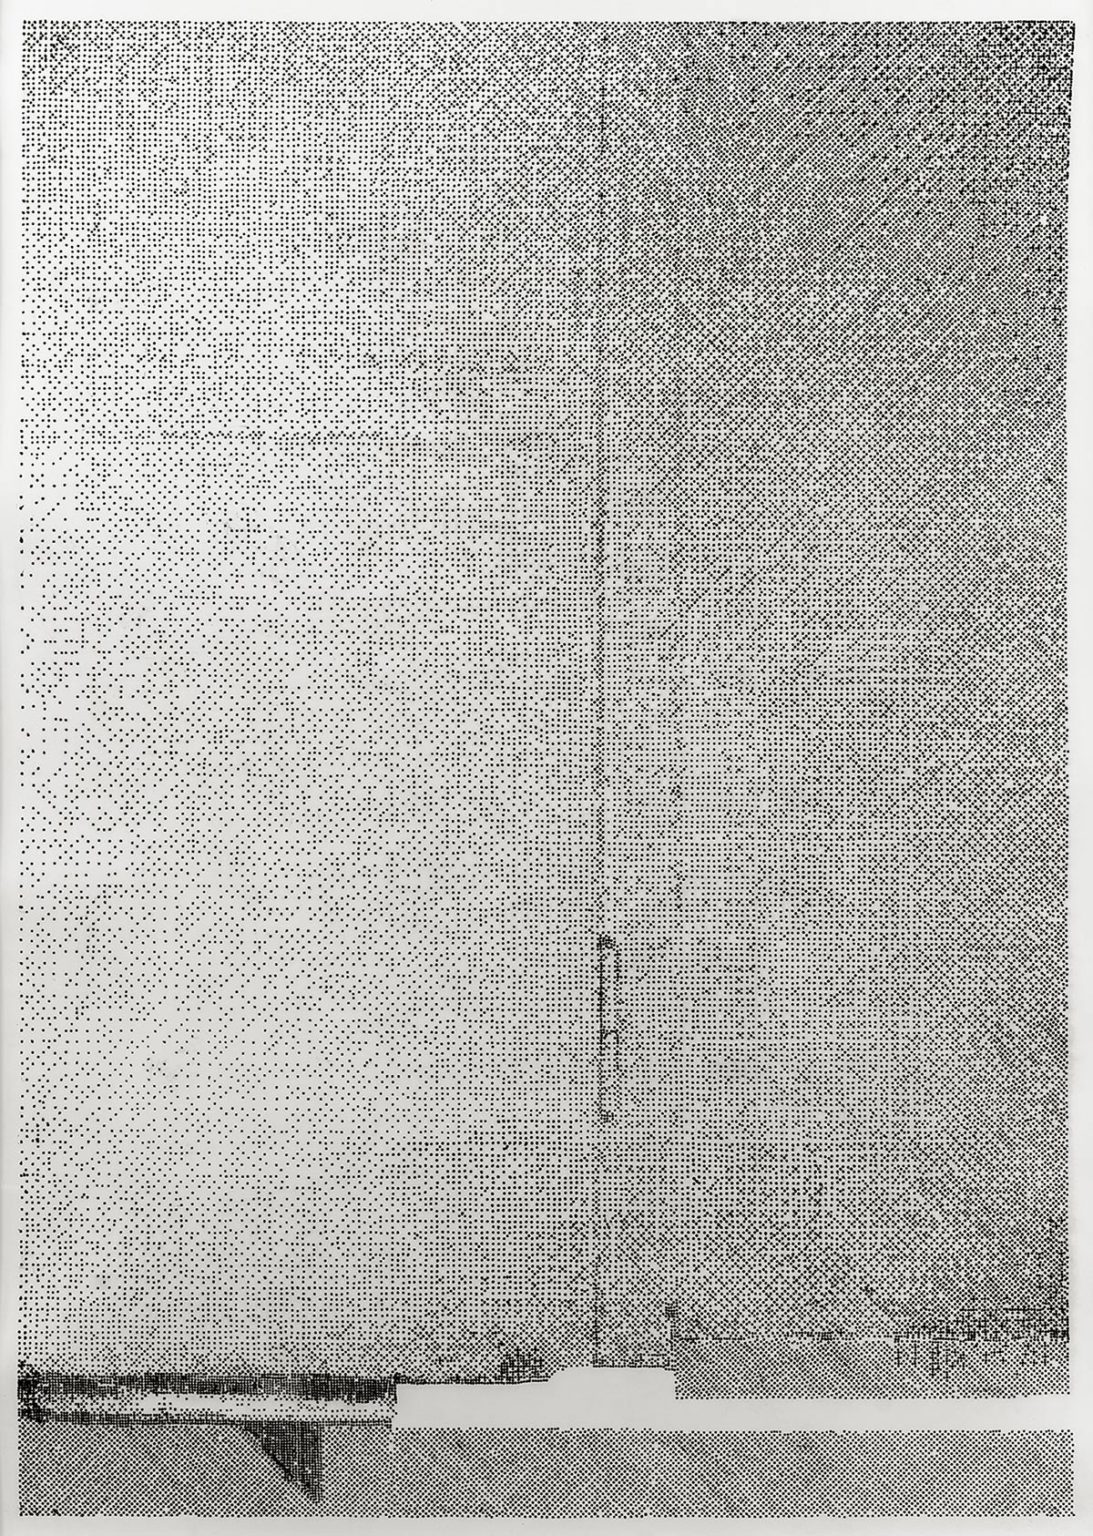 Lichtverlauf Tür I-IV
2020/21, 4-teilig
Kaltnadelradierung auf Zerkall Bütten
I-II je 138 x 98 cm (Blattmaß)